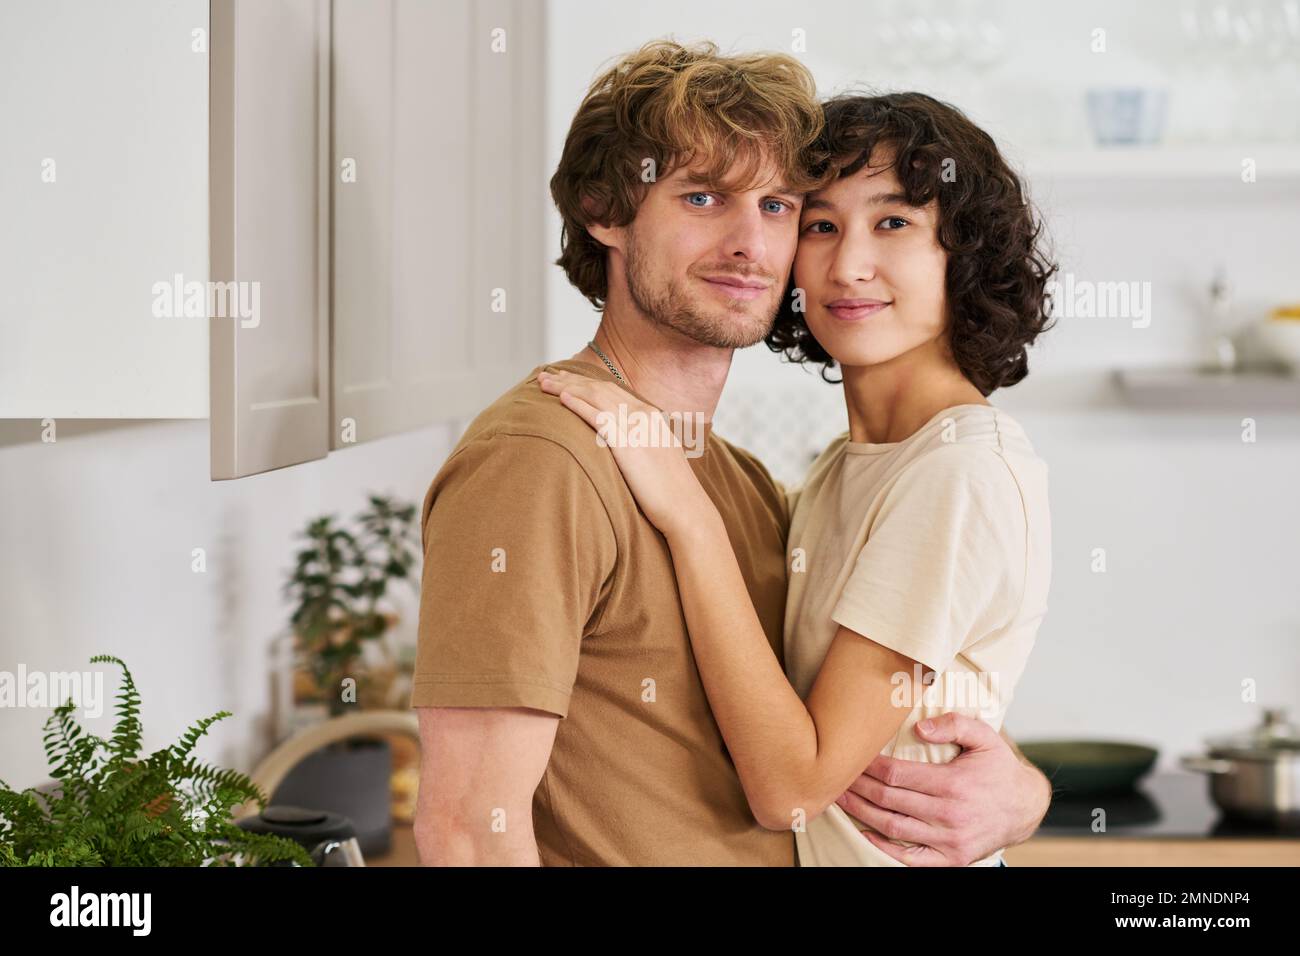 Ein junges, ruhiges, heterosexuelles Paar in T-Shirts, das sich an den Köpfen berührt, während es in der Küche in Umarmung steht und in die Kamera schaut Stockfoto